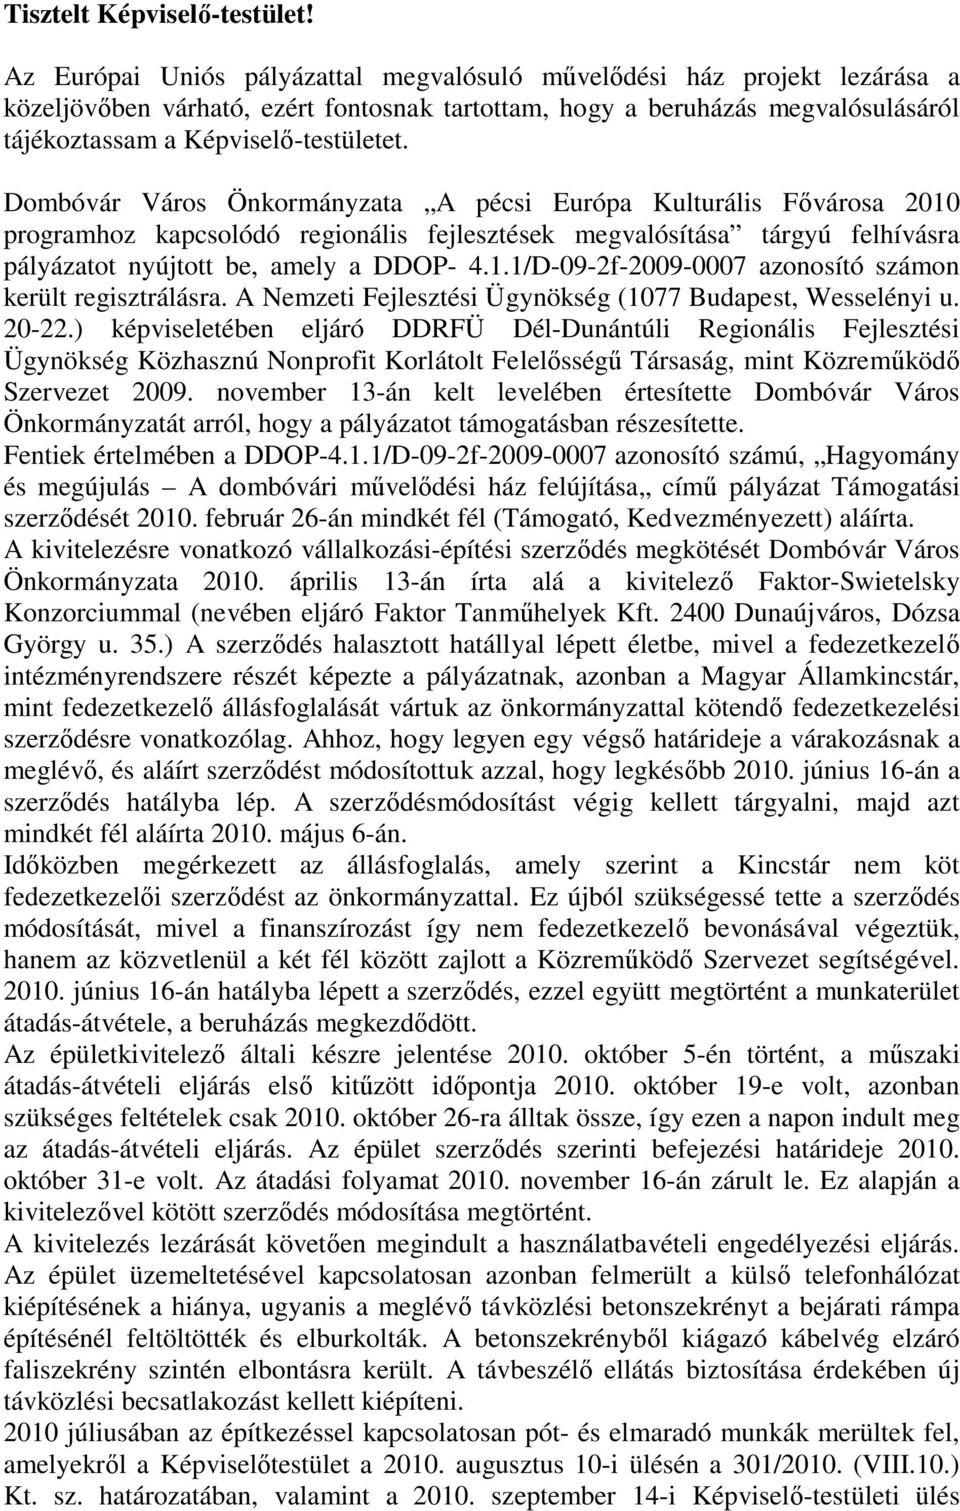 Dombóvár Város Önkormányzata A pécsi Európa Kulturális Fővárosa 2010 programhoz kapcsolódó regionális fejlesztések megvalósítása tárgyú felhívásra pályázatot nyújtott be, amely a DDOP- 4.1.1/D-09-2f-2009-0007 azonosító számon került regisztrálásra.